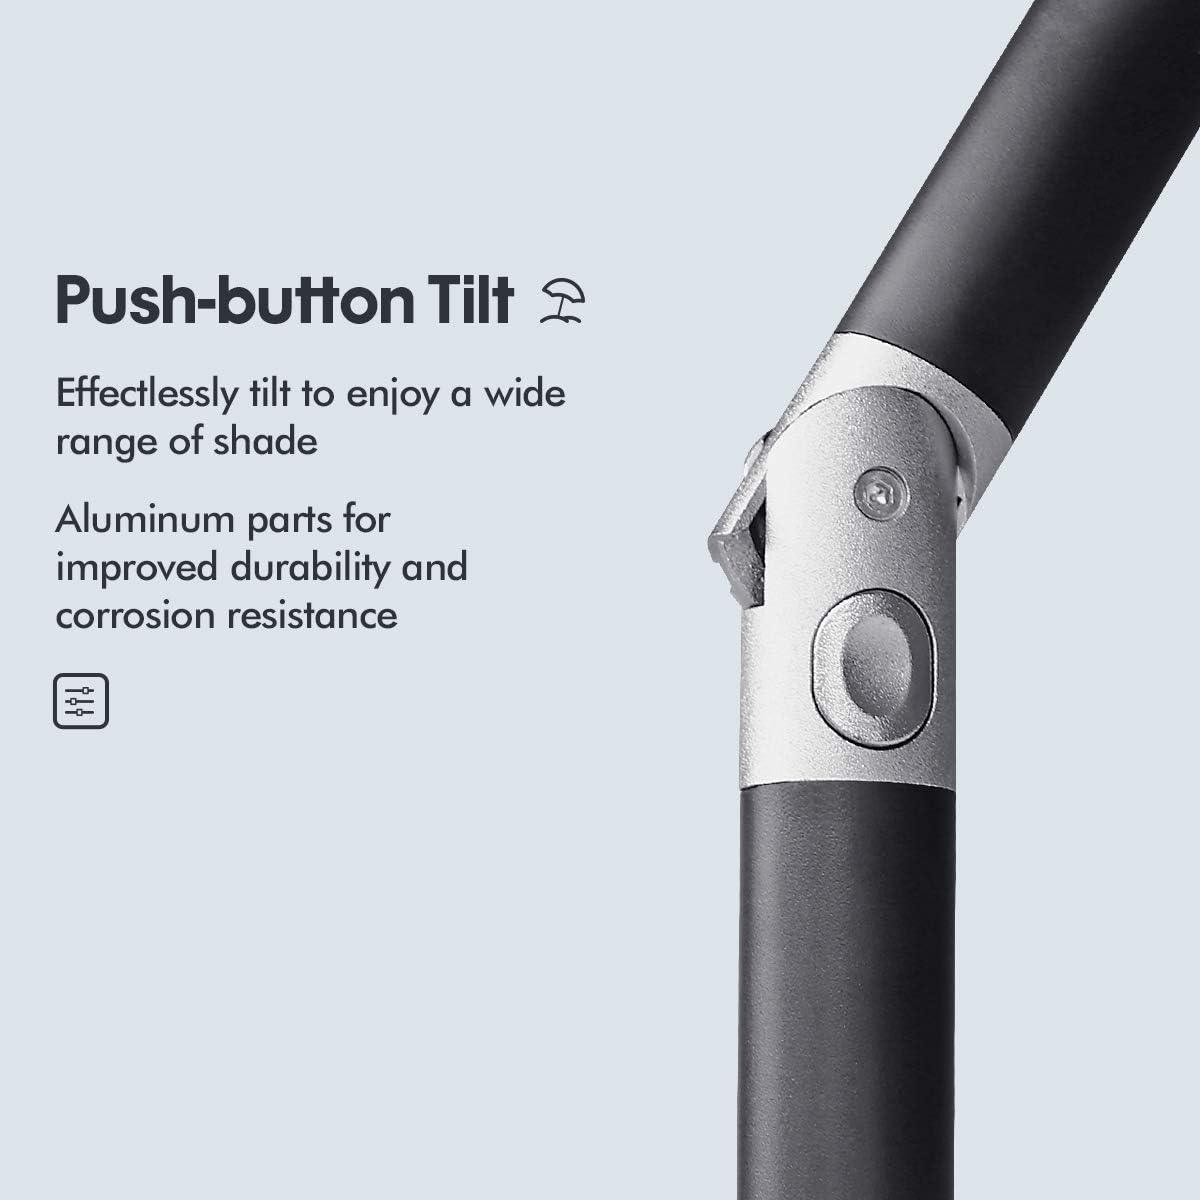 Garden Parasol Umbrella Aluminum Crank & Tilt Function Pole 38mm W - Massive Discounts